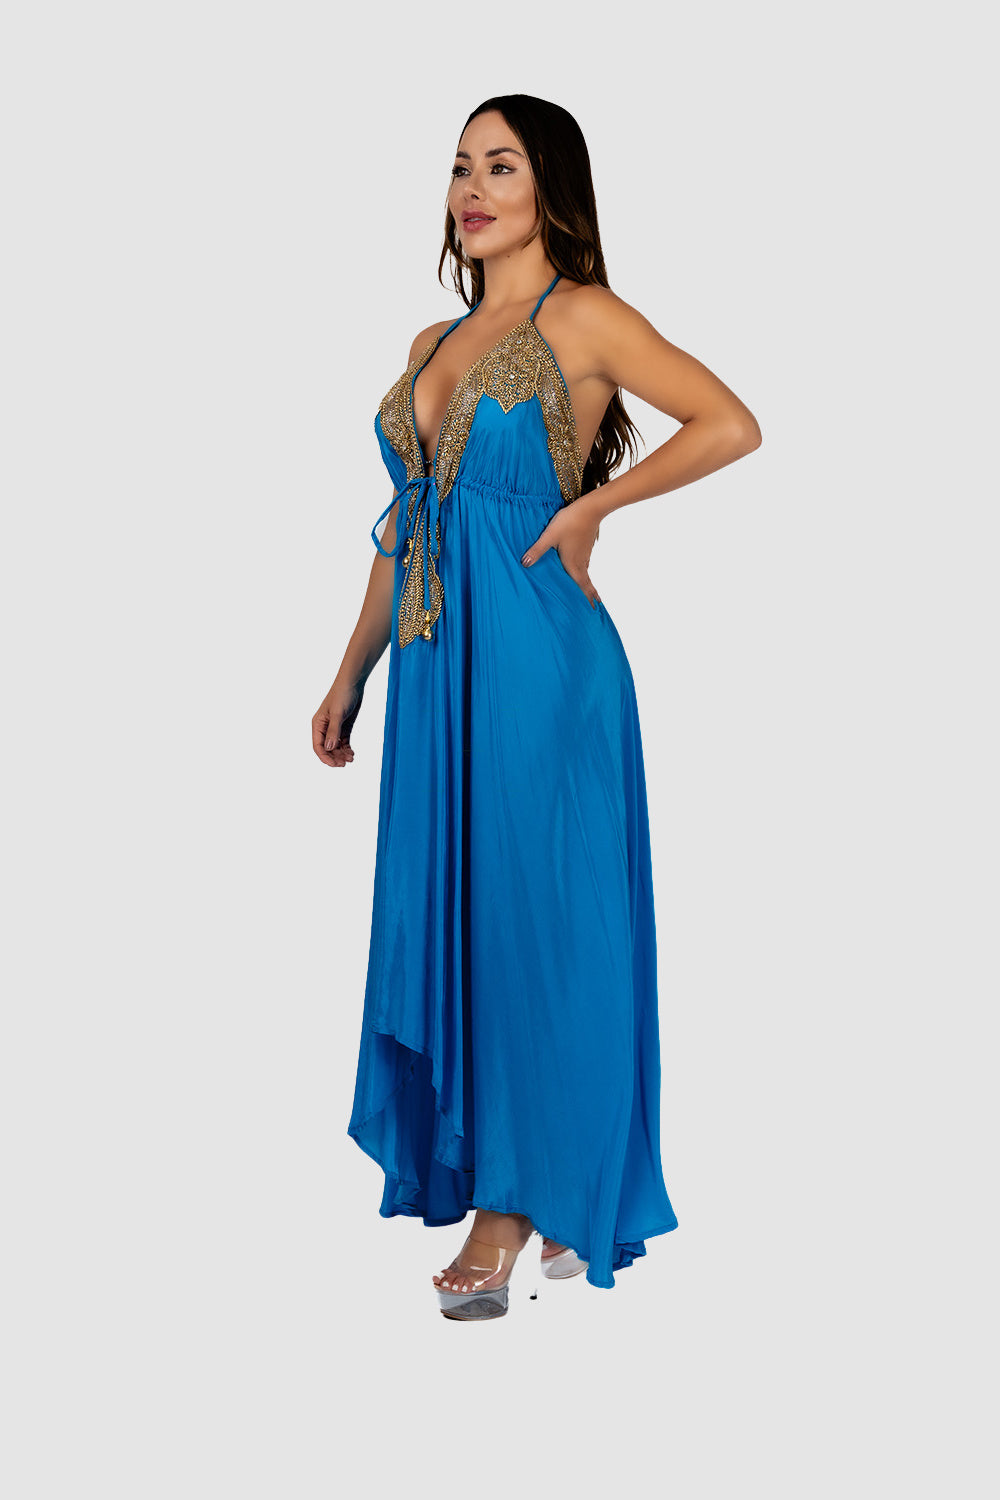 Jsquad Turquoise Dress